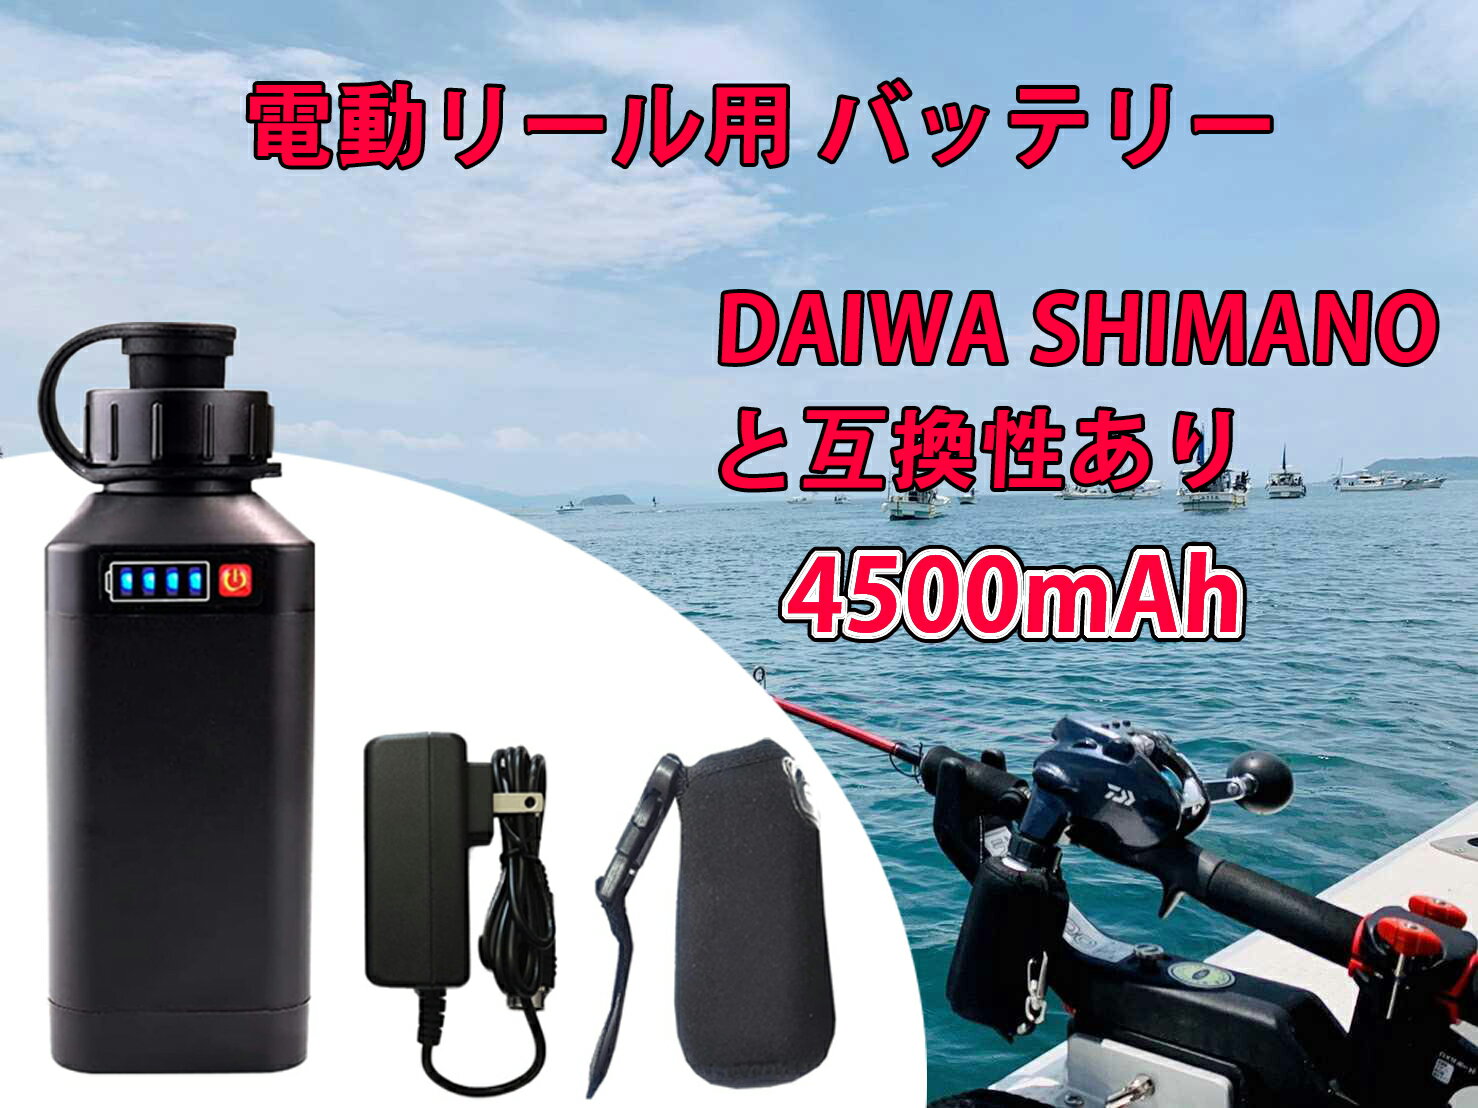 【即日発送】電動リール用 バッテリー 4500mAh LED電量表示付き 船釣り 電動ジギング用 バッテリー DAIWA SHIMANOと互換性あり